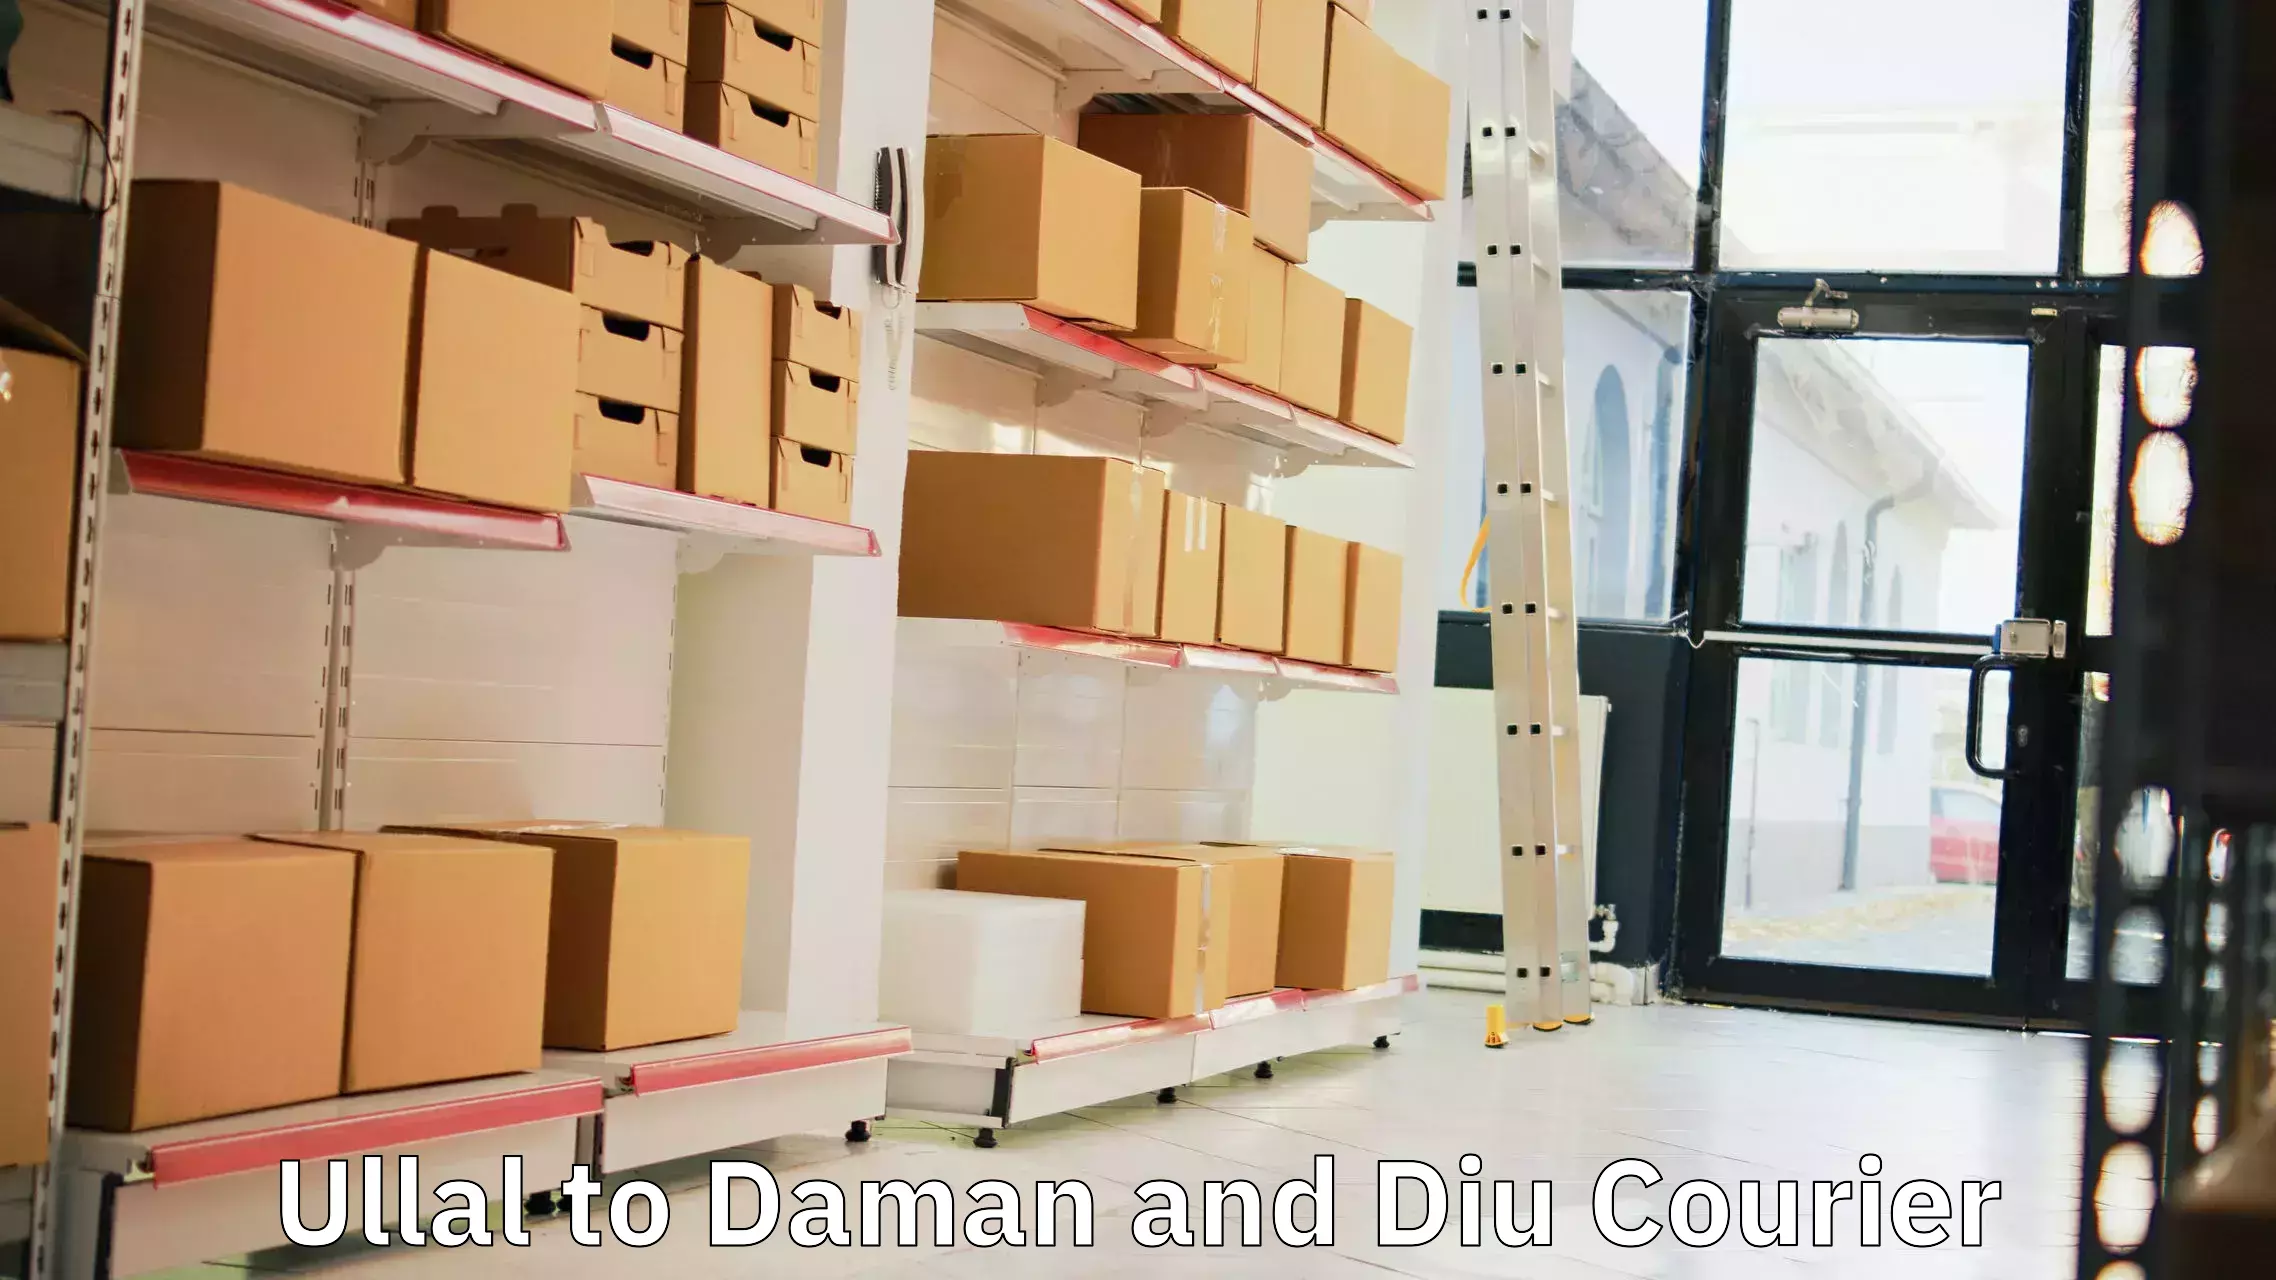 Bulk shipping discounts Ullal to Daman and Diu